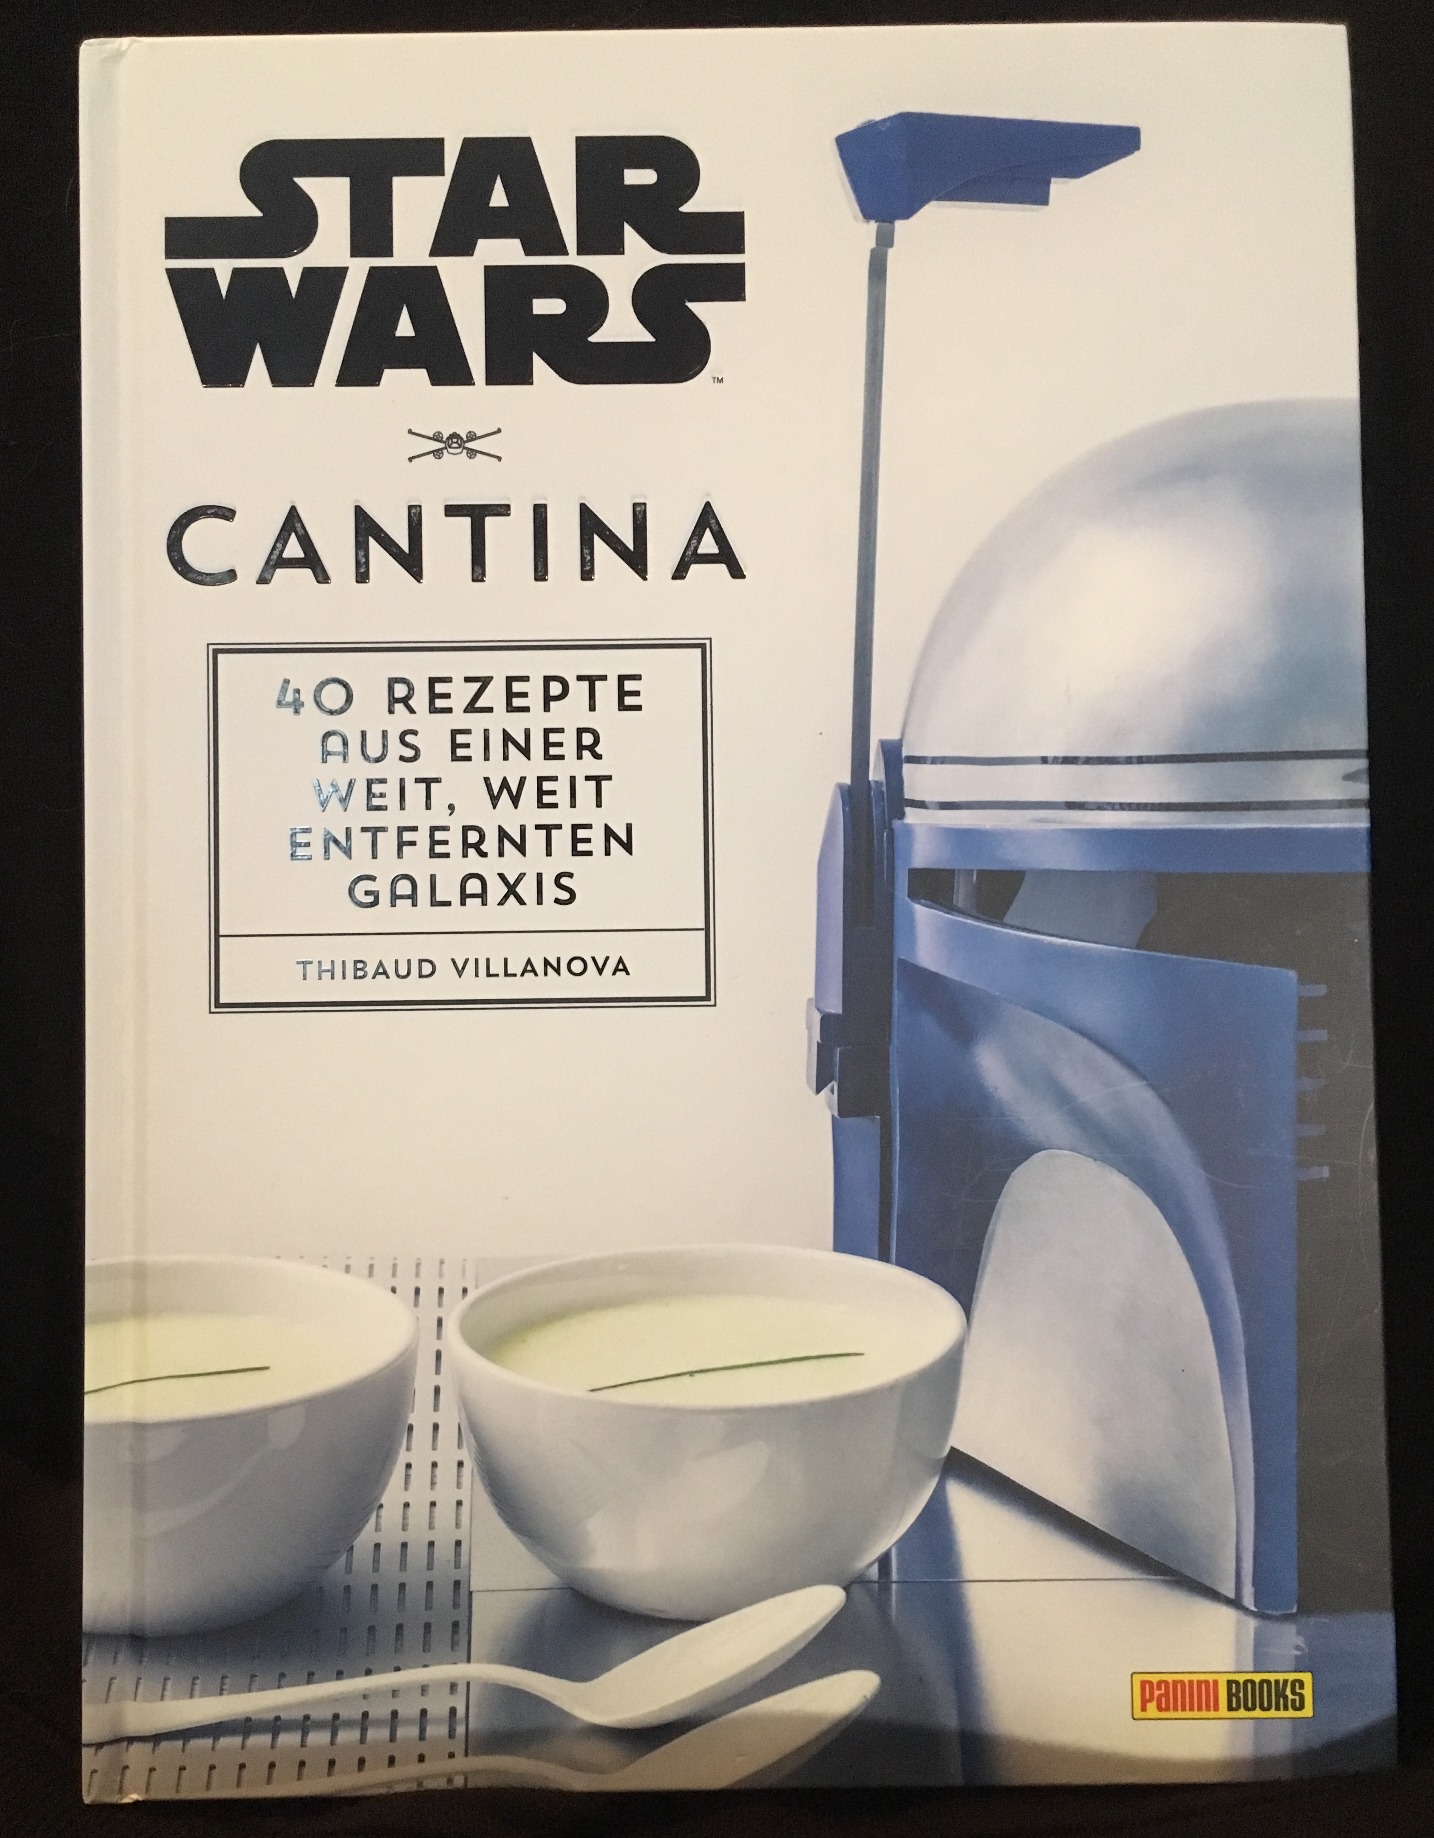 40 Rezepte aus einer weit Cantina Star Wars Kochbuch weit entfernten Galaxis